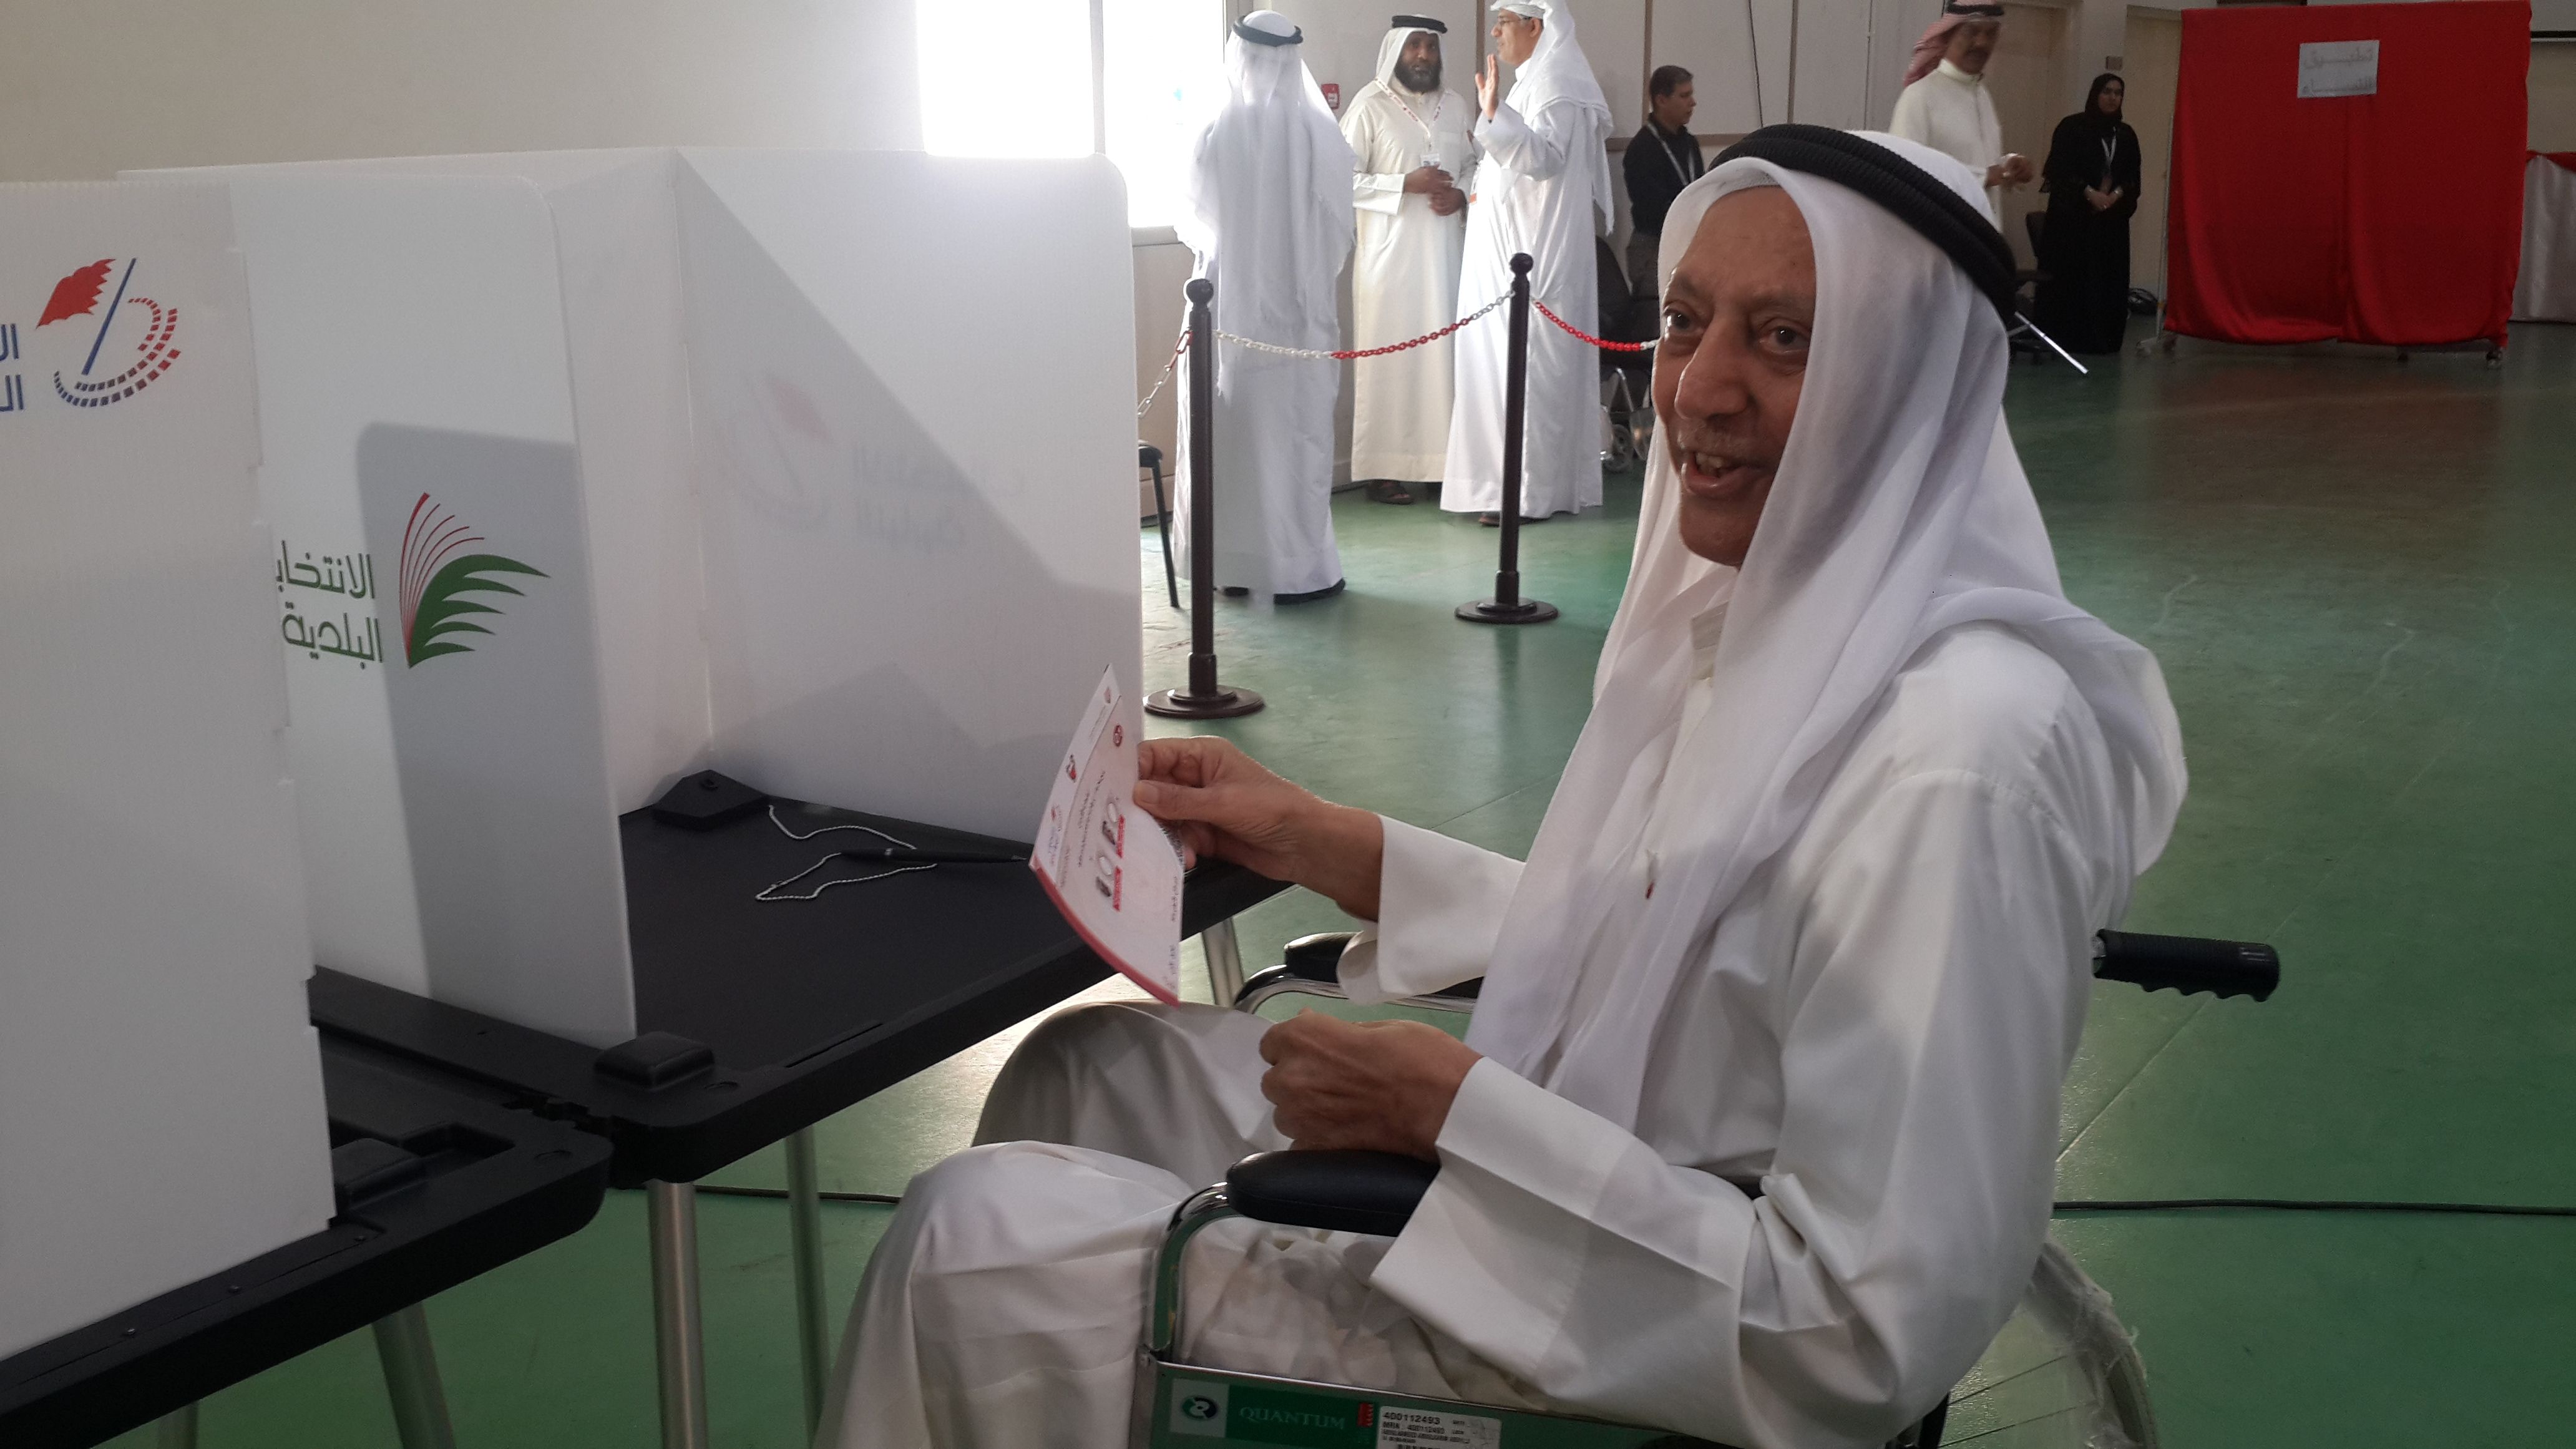 رجل كبير في السن يشارك في العملية الانتخابية اليوم في اولي المحرق 